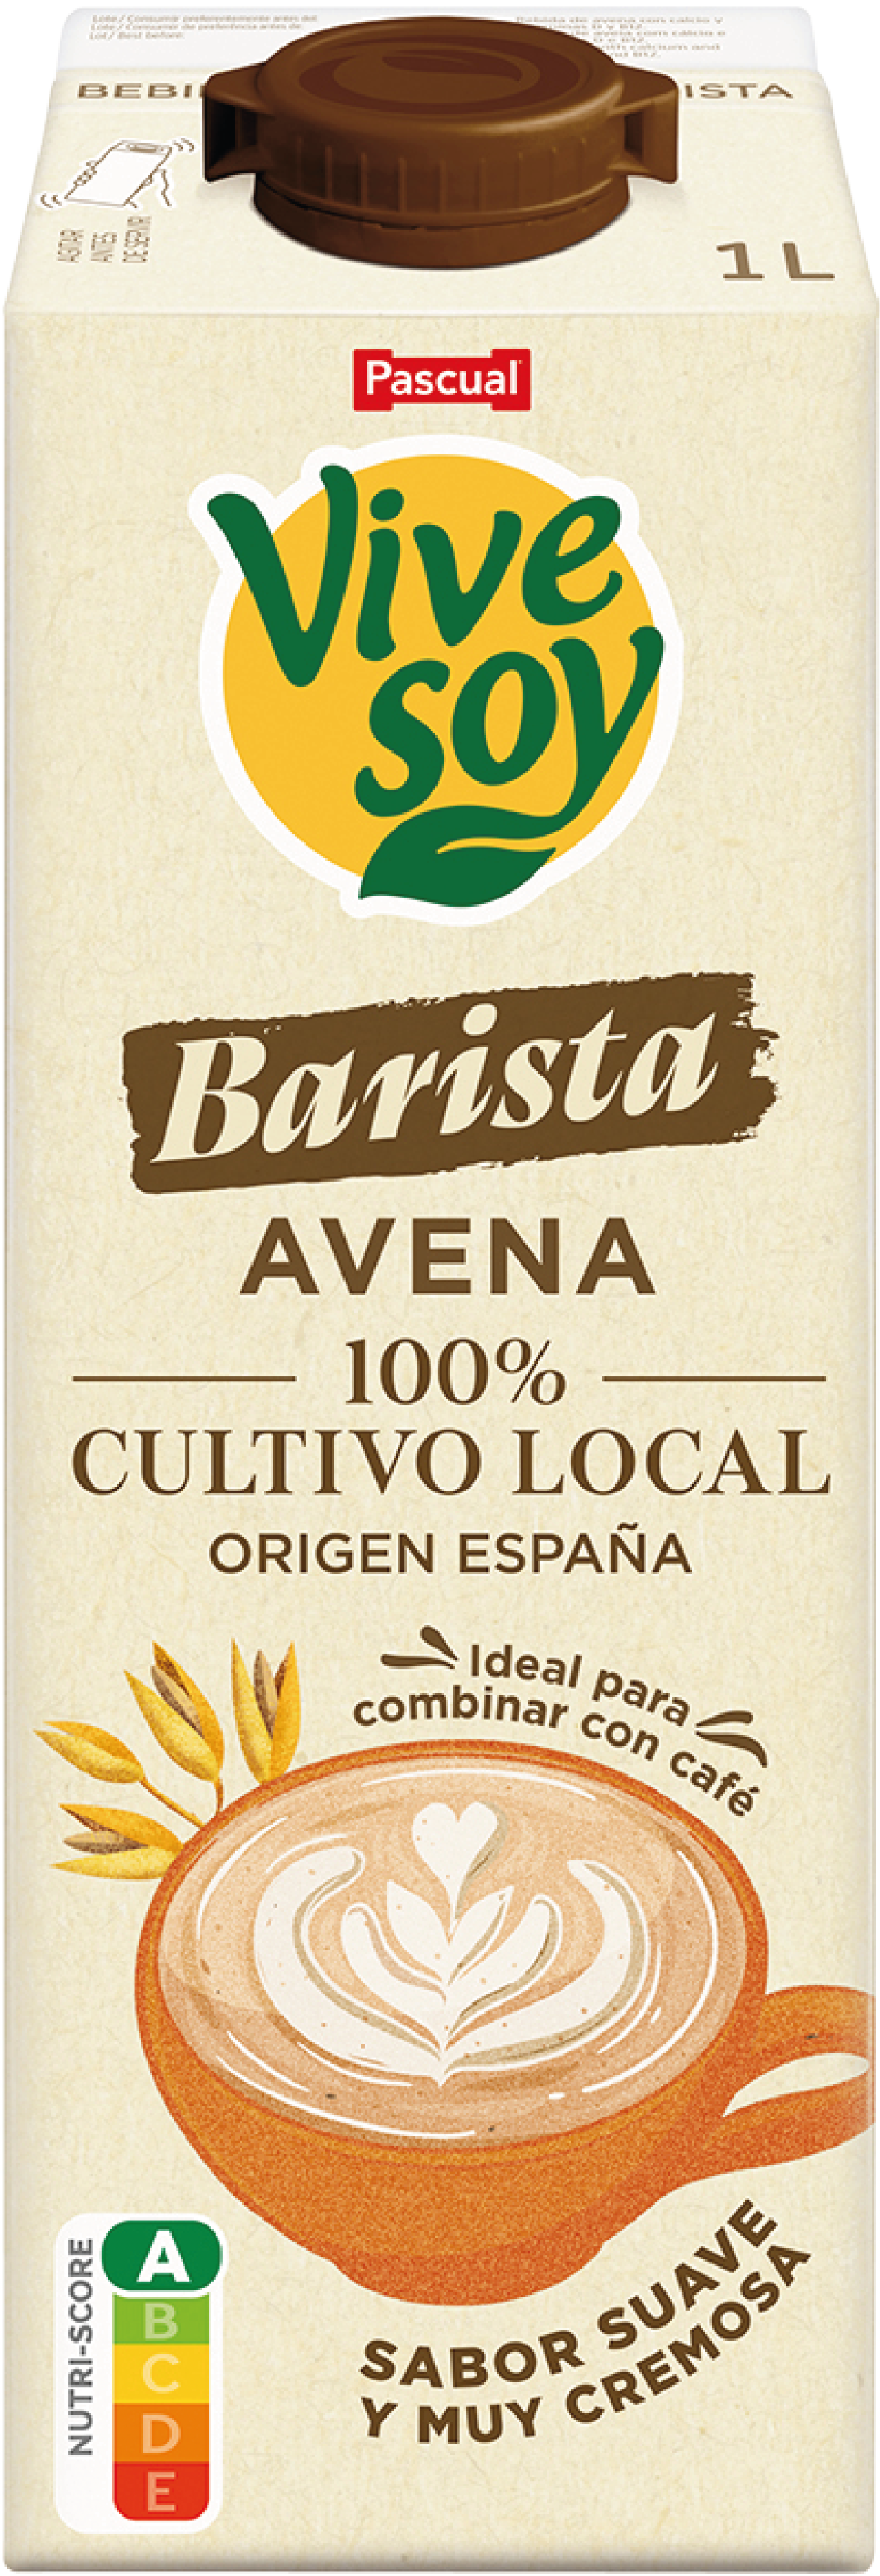 VIVESOY AVENA BARISTA 1L C6 - Forpas Gastronomia, distribuidores